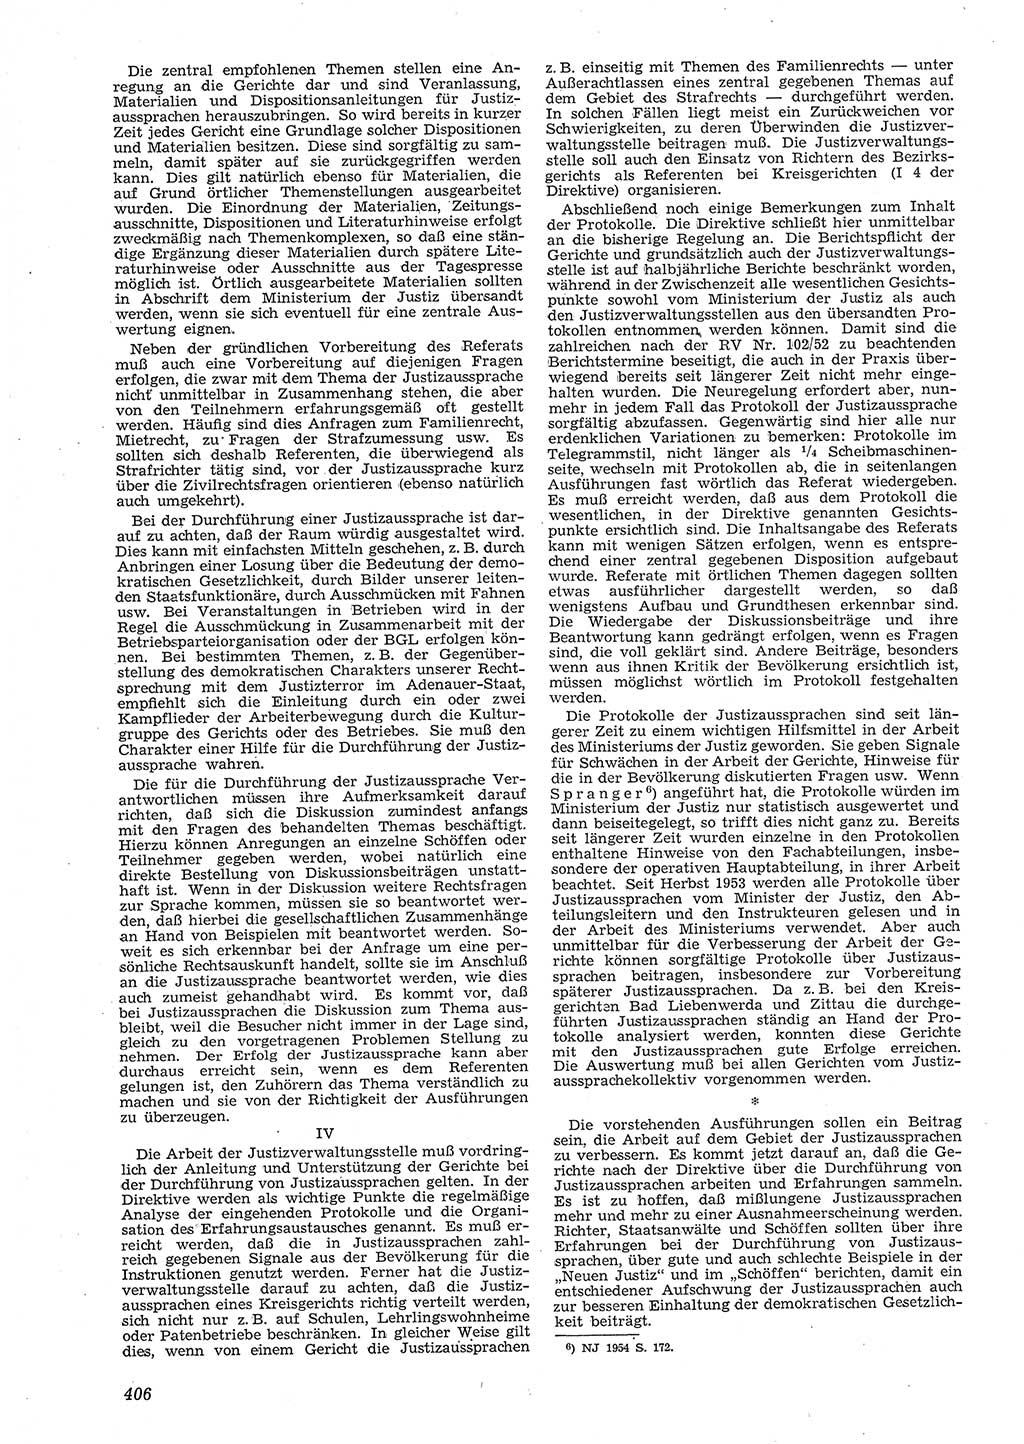 Neue Justiz (NJ), Zeitschrift für Recht und Rechtswissenschaft [Deutsche Demokratische Republik (DDR)], 8. Jahrgang 1954, Seite 406 (NJ DDR 1954, S. 406)